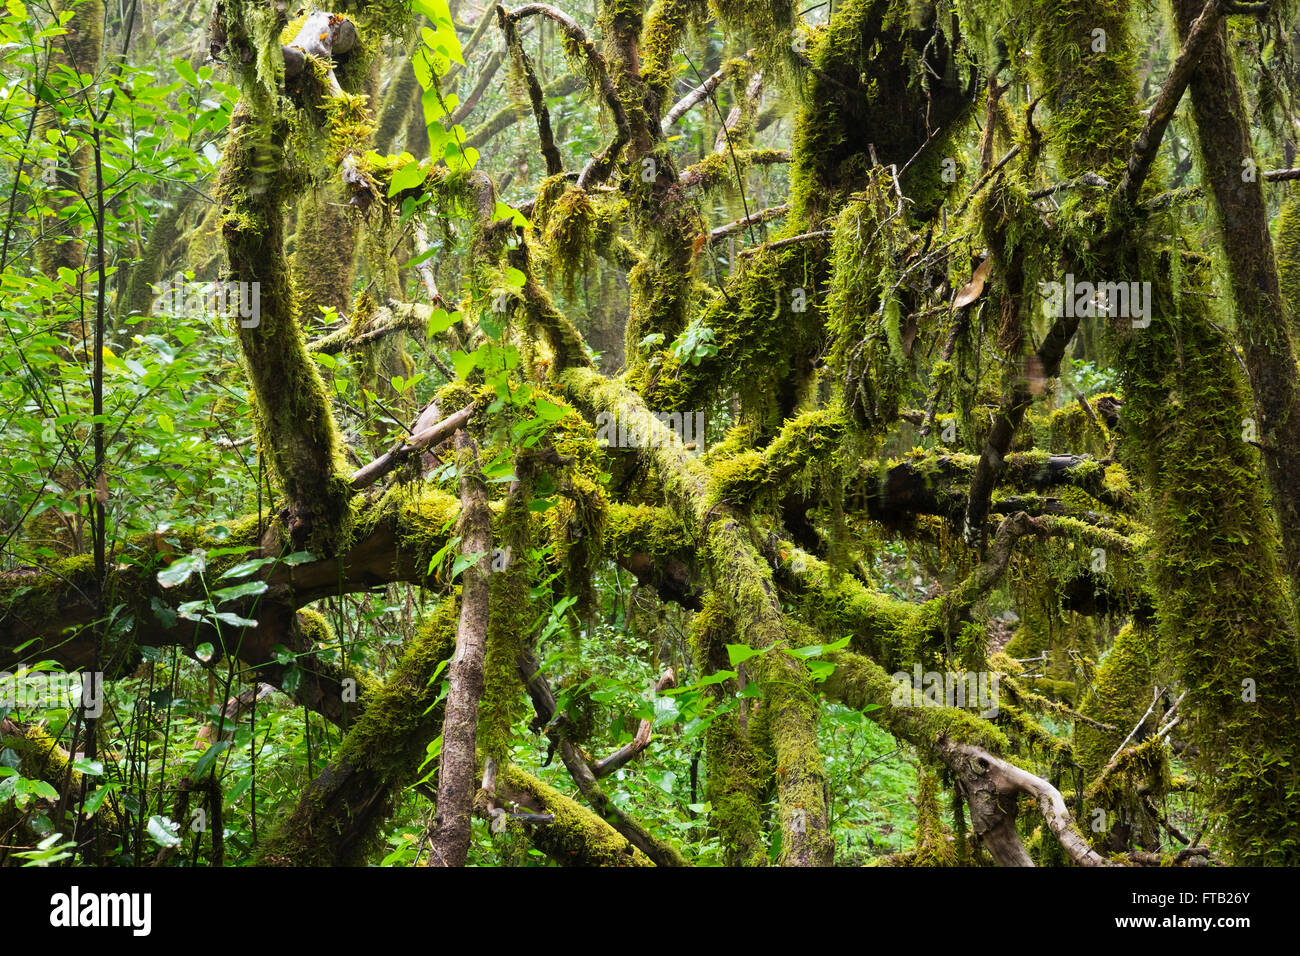 Mossy rami di alberi in una foresta laurel, Parco Nazionale di Garajonay, La Gomera, isole Canarie, Spagna Foto Stock